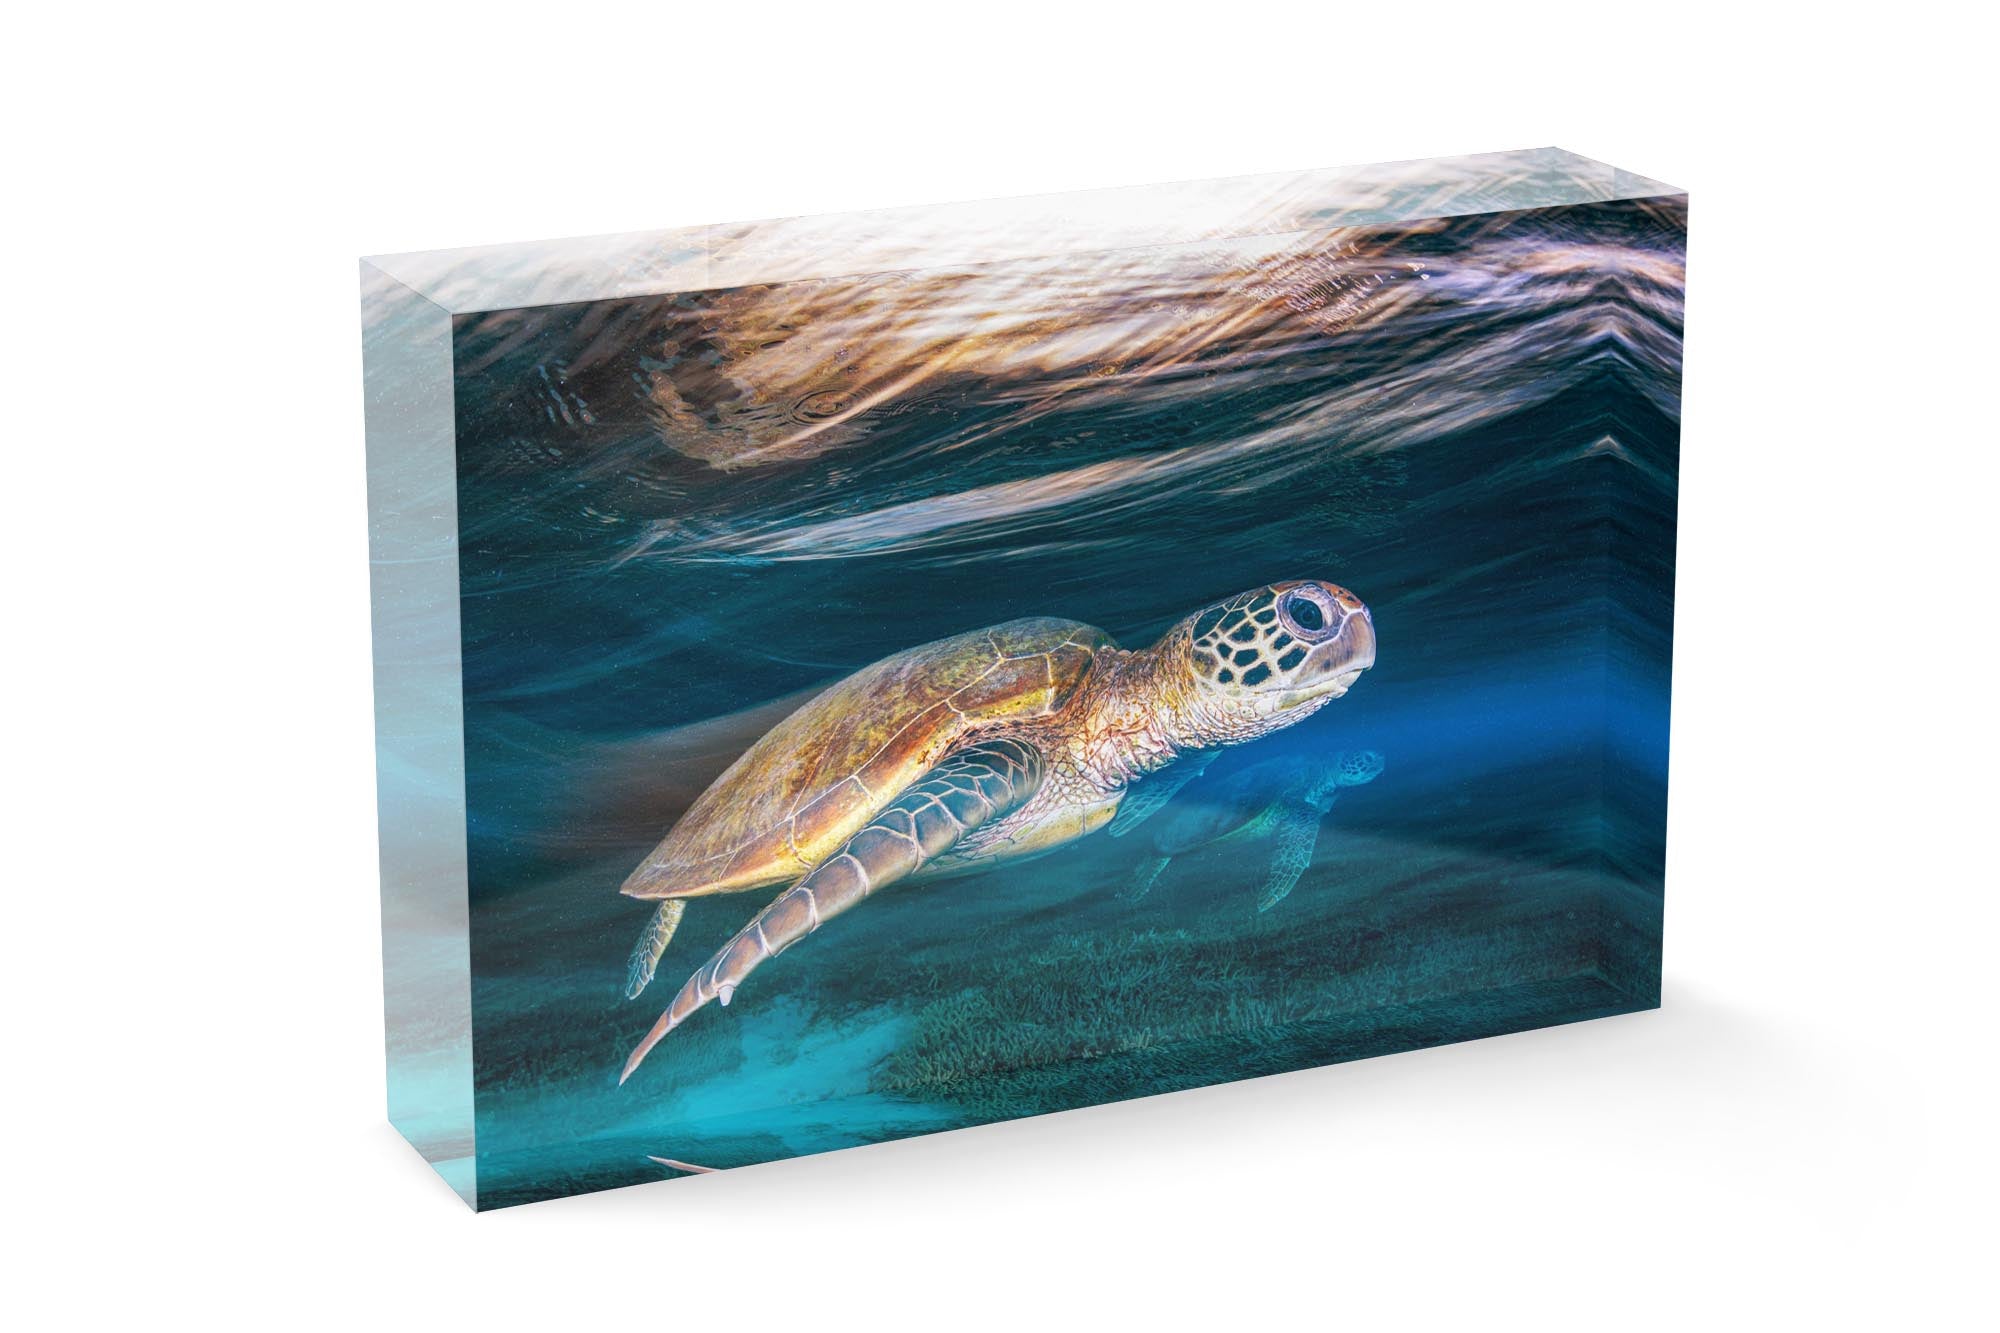 Ghostly Turtles | Great Barrier Reef